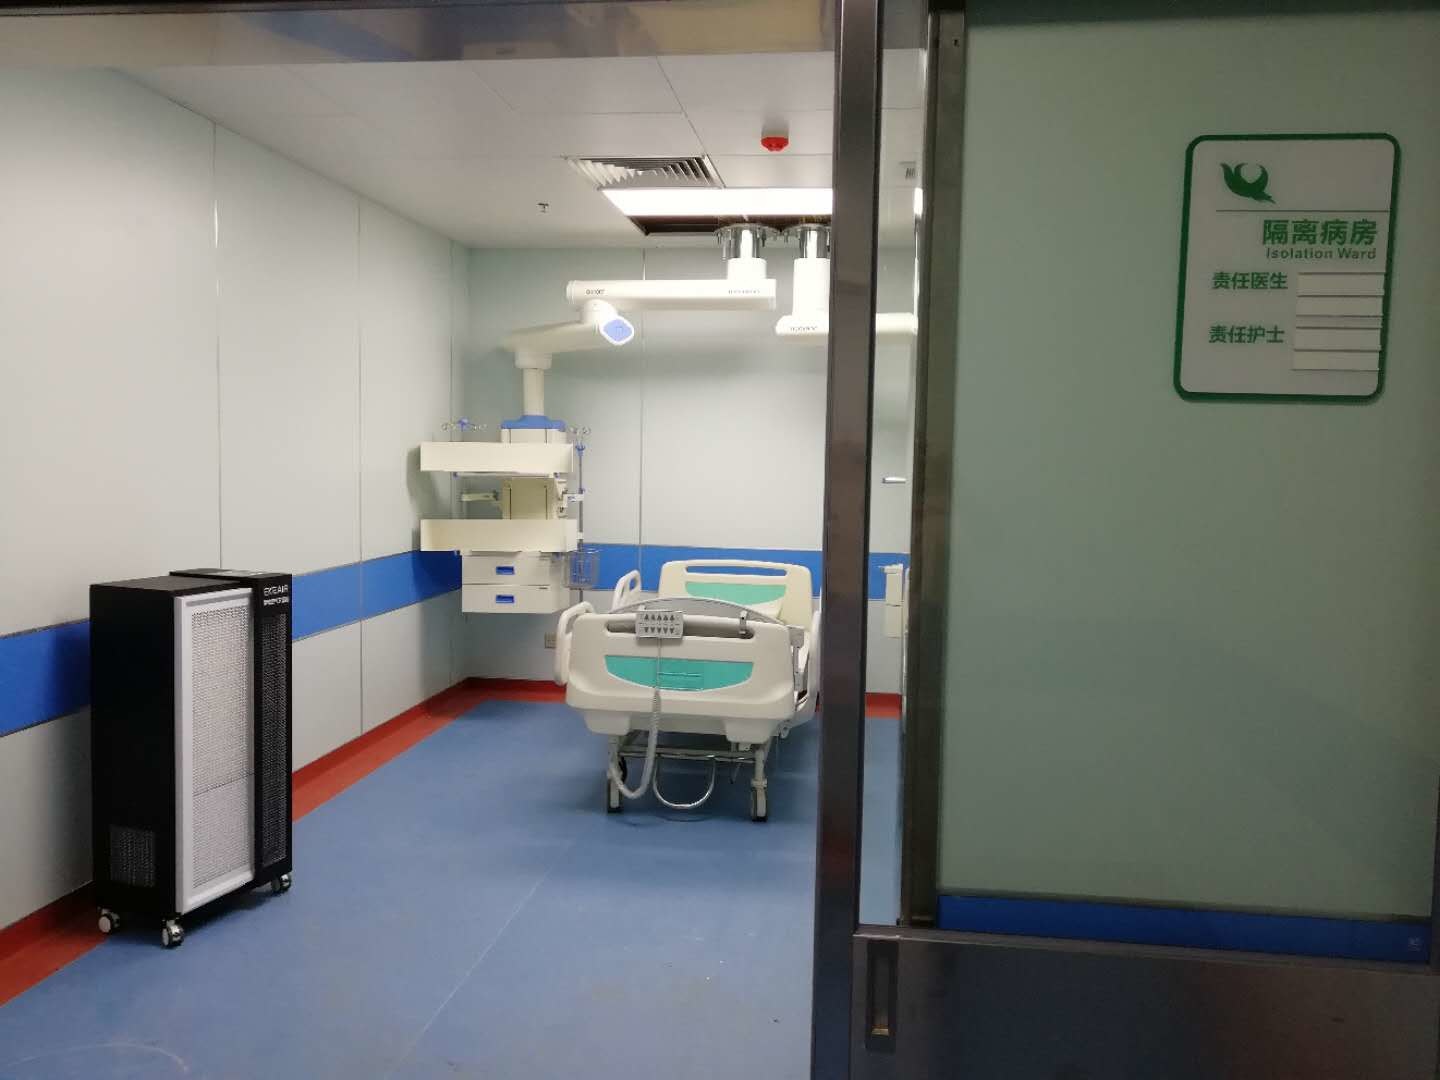 najnowsza sprawa firmy na temat Nowy kampus, czwarty szpital Uniwersytetu Medycznego w Anhui